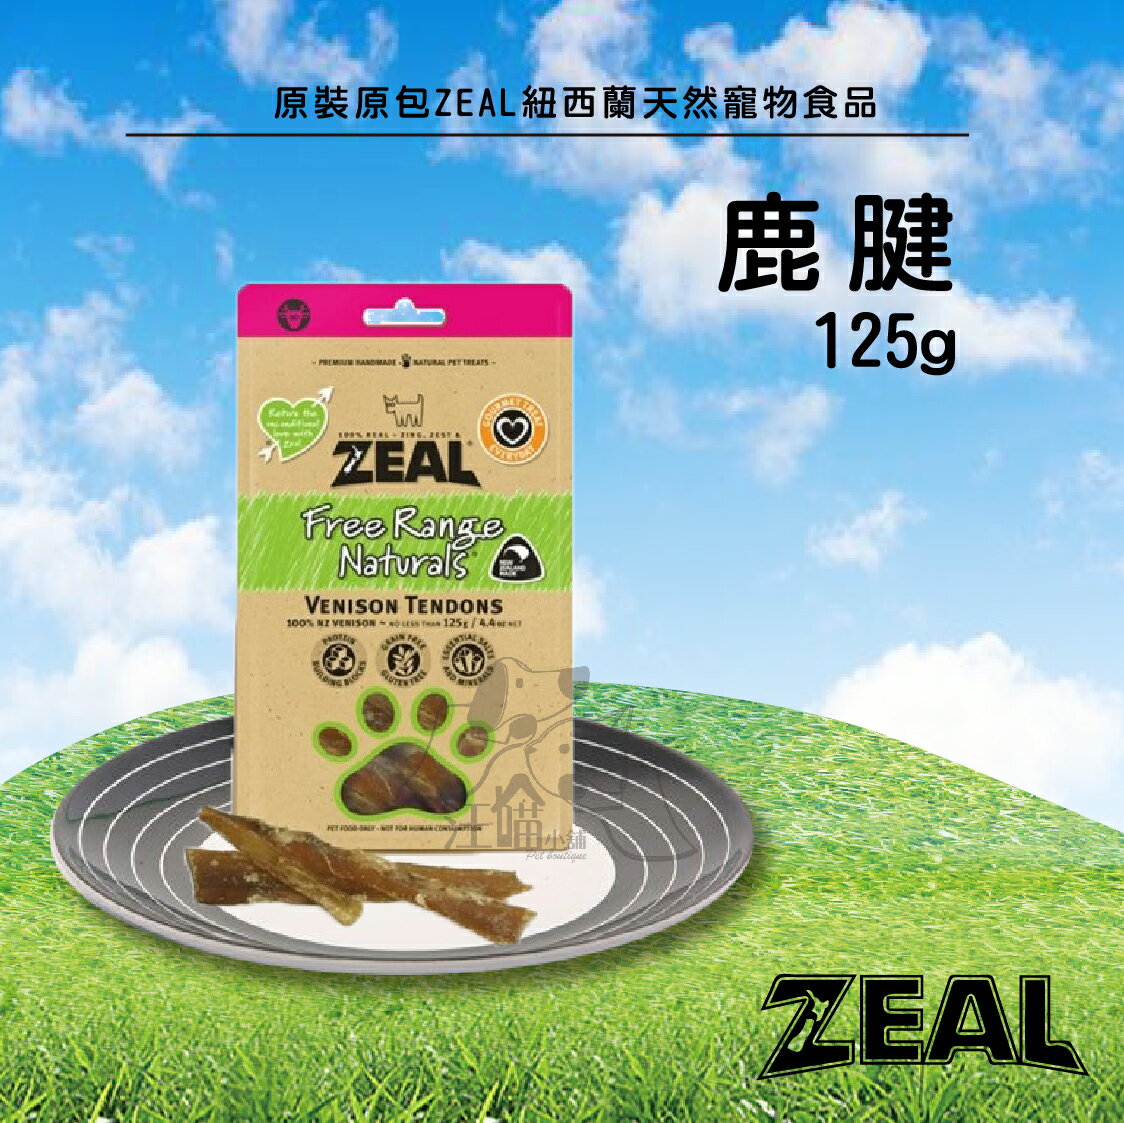 原裝原包 ZEAL 紐西蘭天然寵物食品【鹿腱】 125g